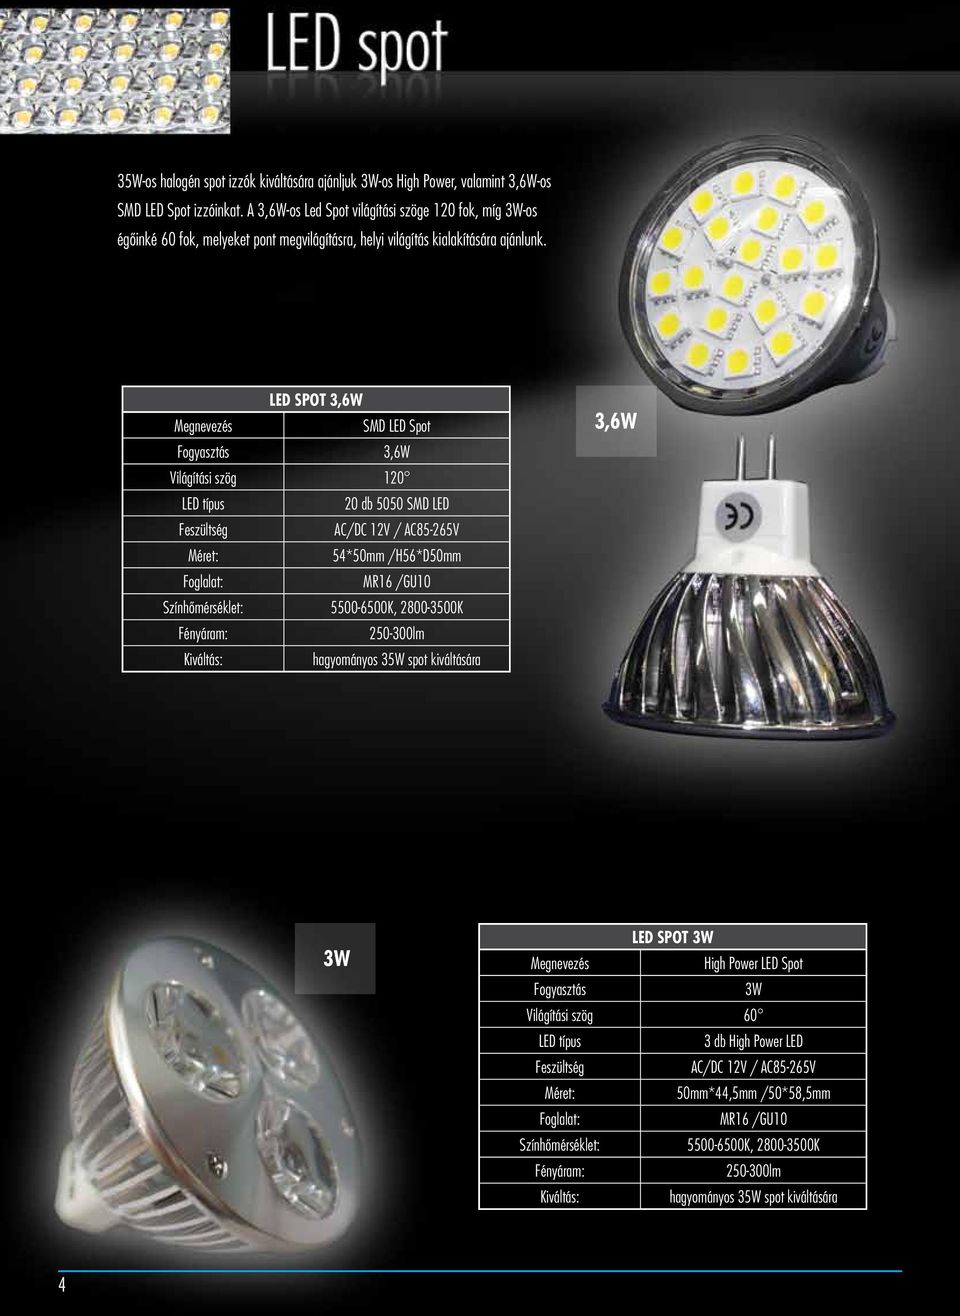 LED SPOT 3,6W Megnevezés SMD LED Spot Fogyasztás 3,6W Világítási szög 120 LED típus 20 db 5050 SMD LED Feszültség AC/DC 12V / AC85-265V Méret: 54*50mm /H56*D50mm Foglalat: MR16 /GU10 Színhõmérséklet: